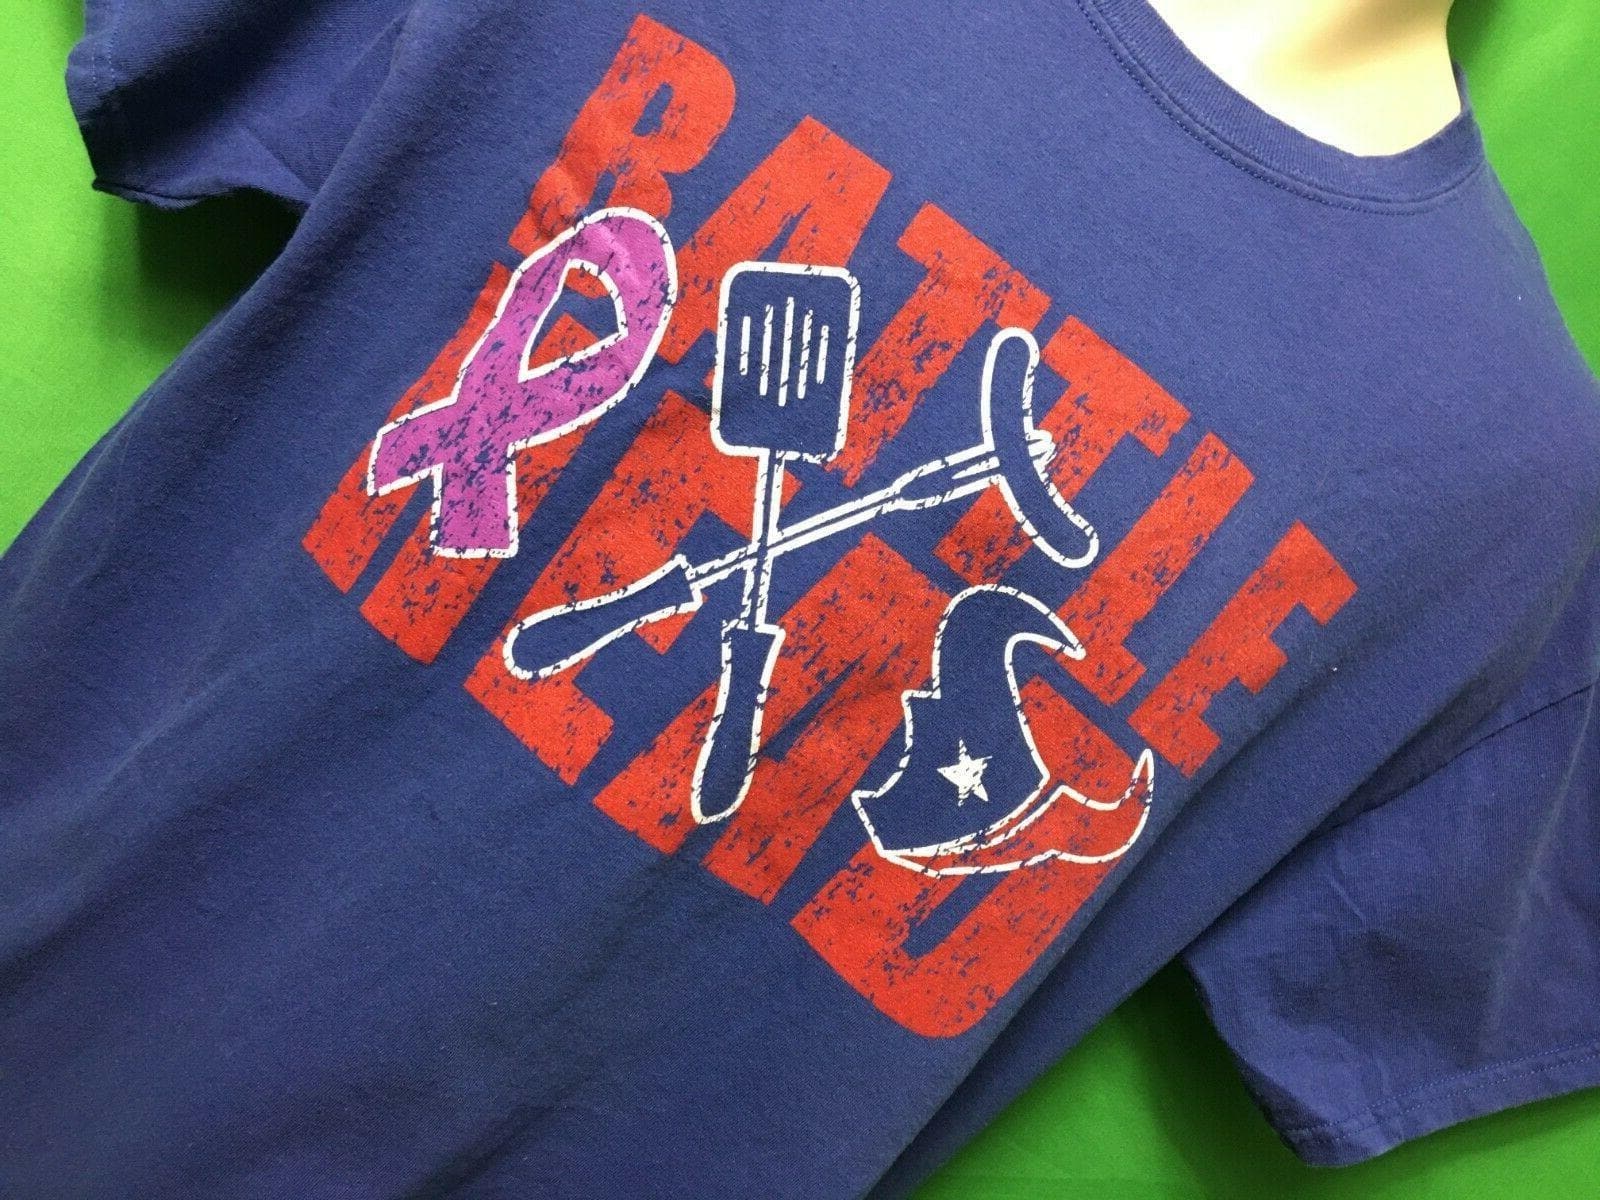 NFL Houston Texans "Battle Head" Quirky T-Shirt Men's Large